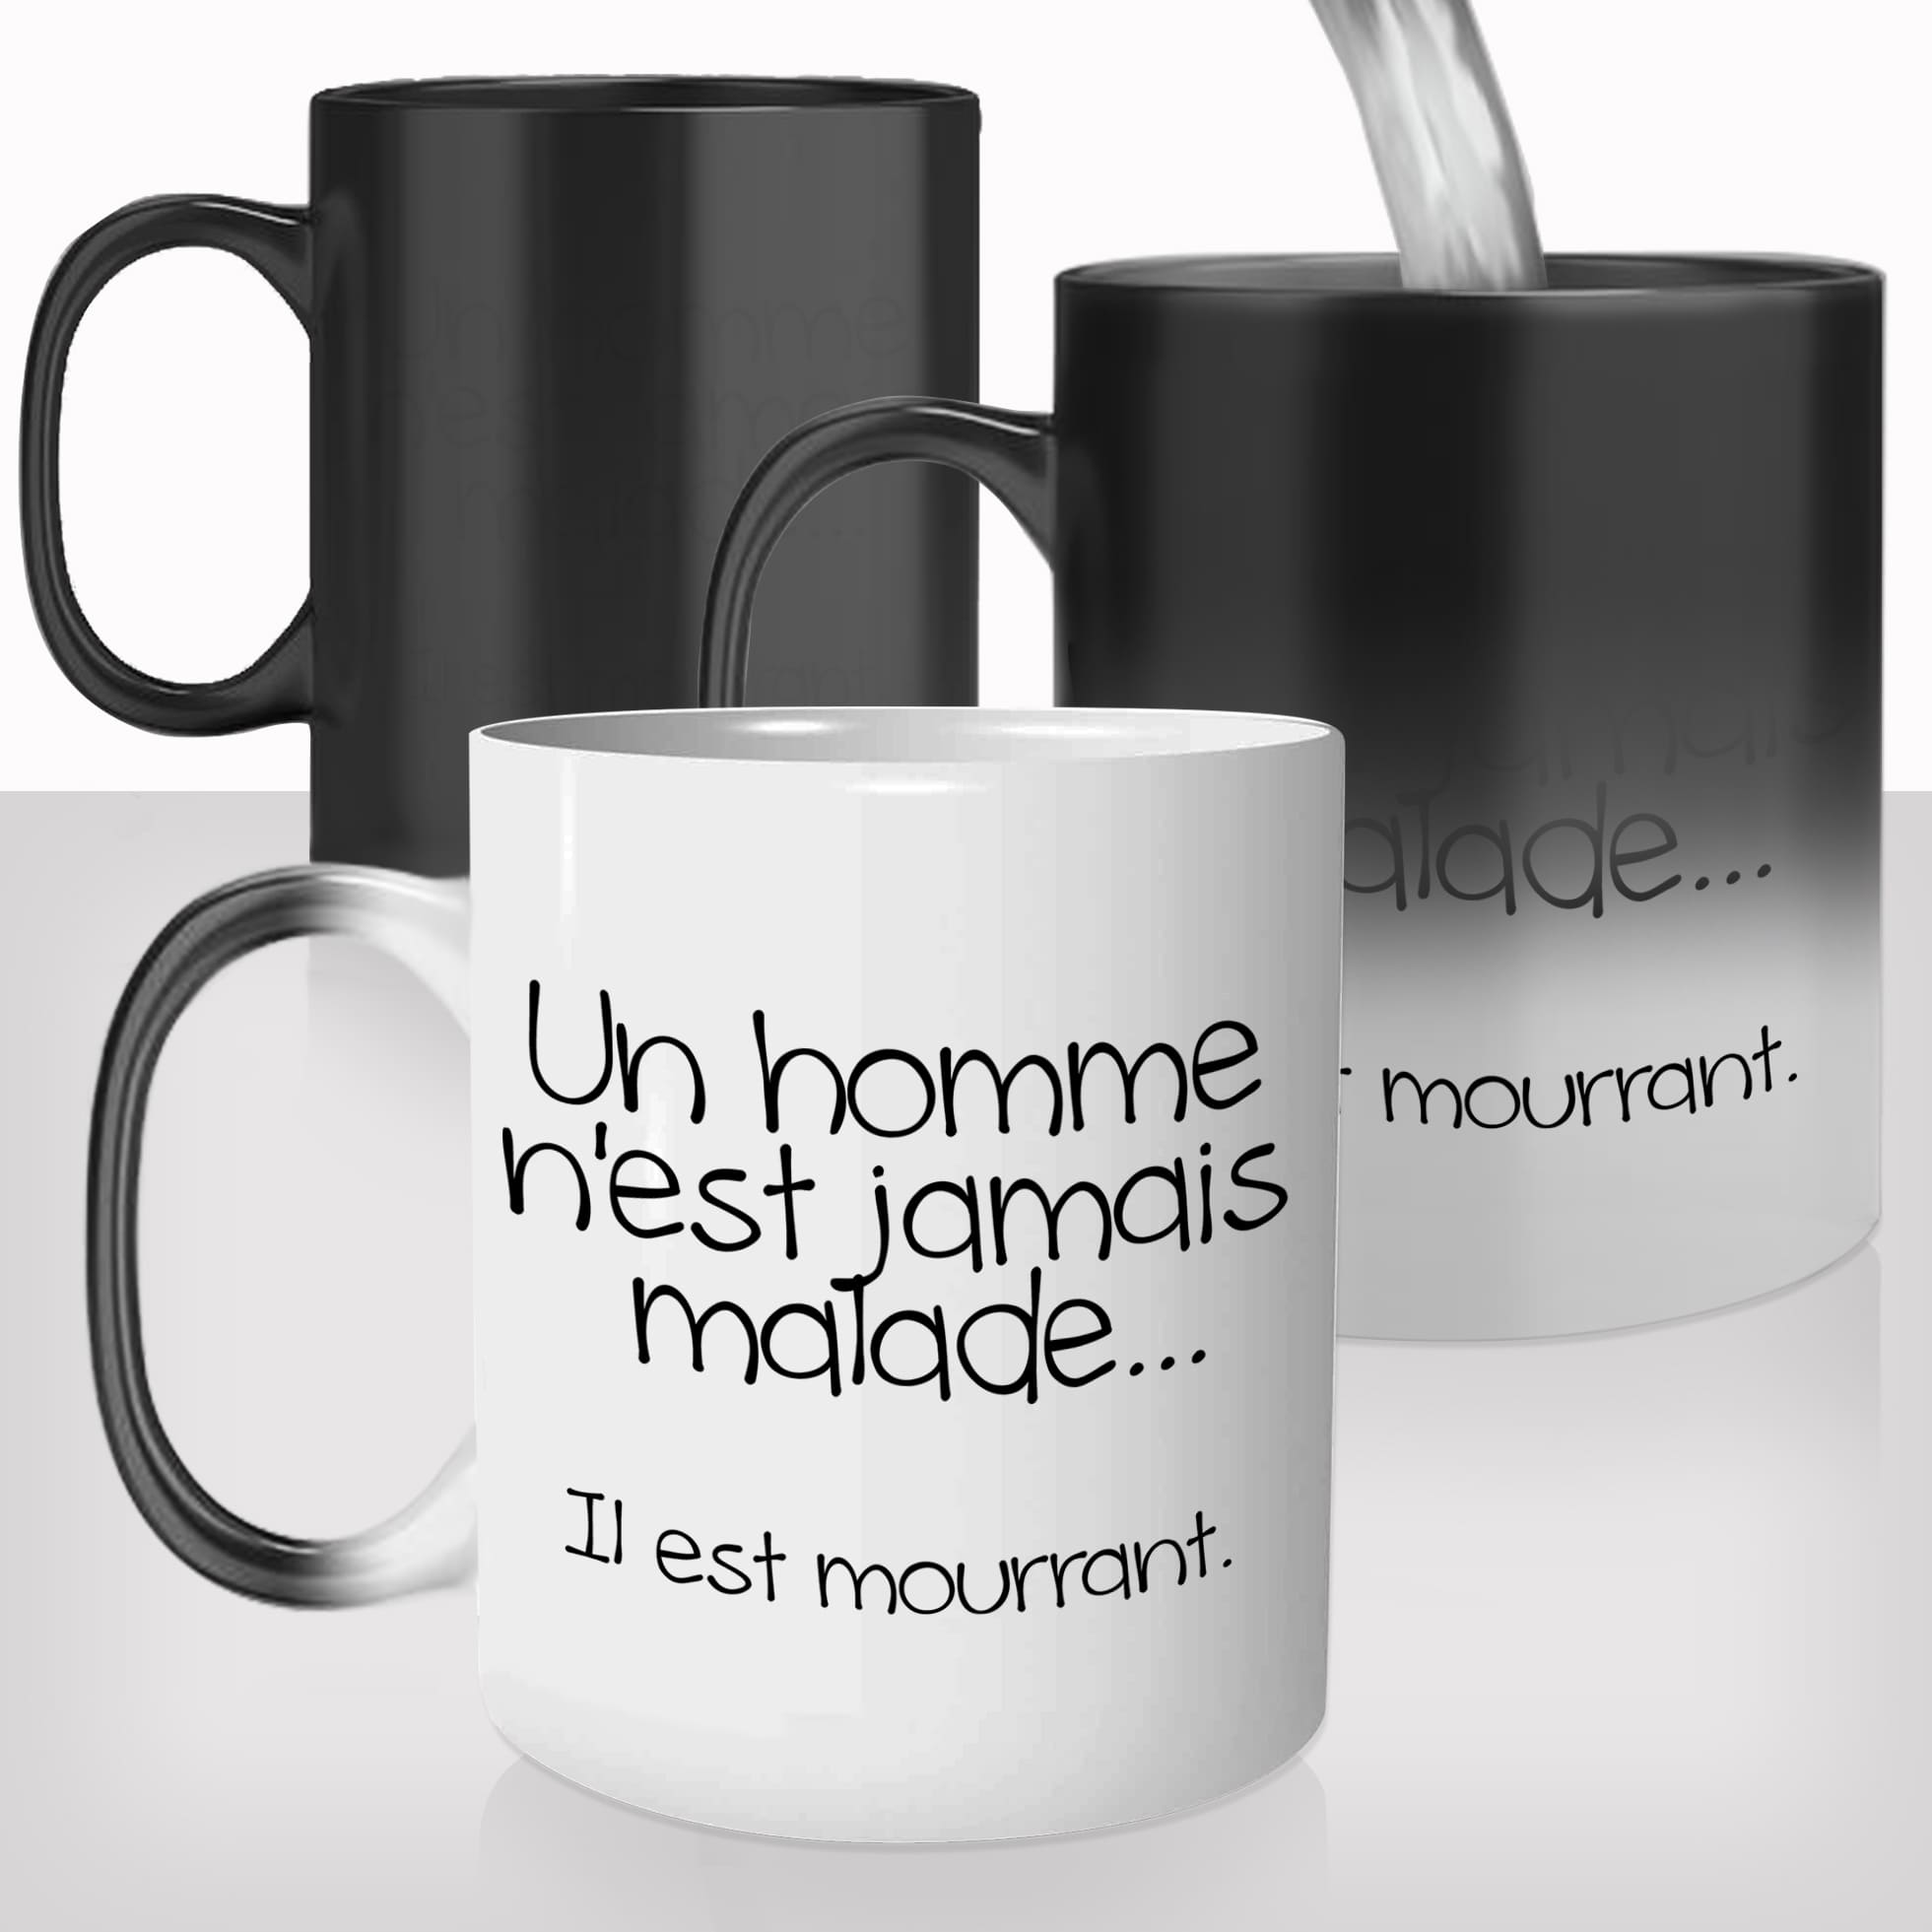 mug-tasse-magique-thermique-thermoreactif-personnalisé-personnalisable-homme-malade-mourrant-drole-prenom-idée-cadeau-original-café-thé-2